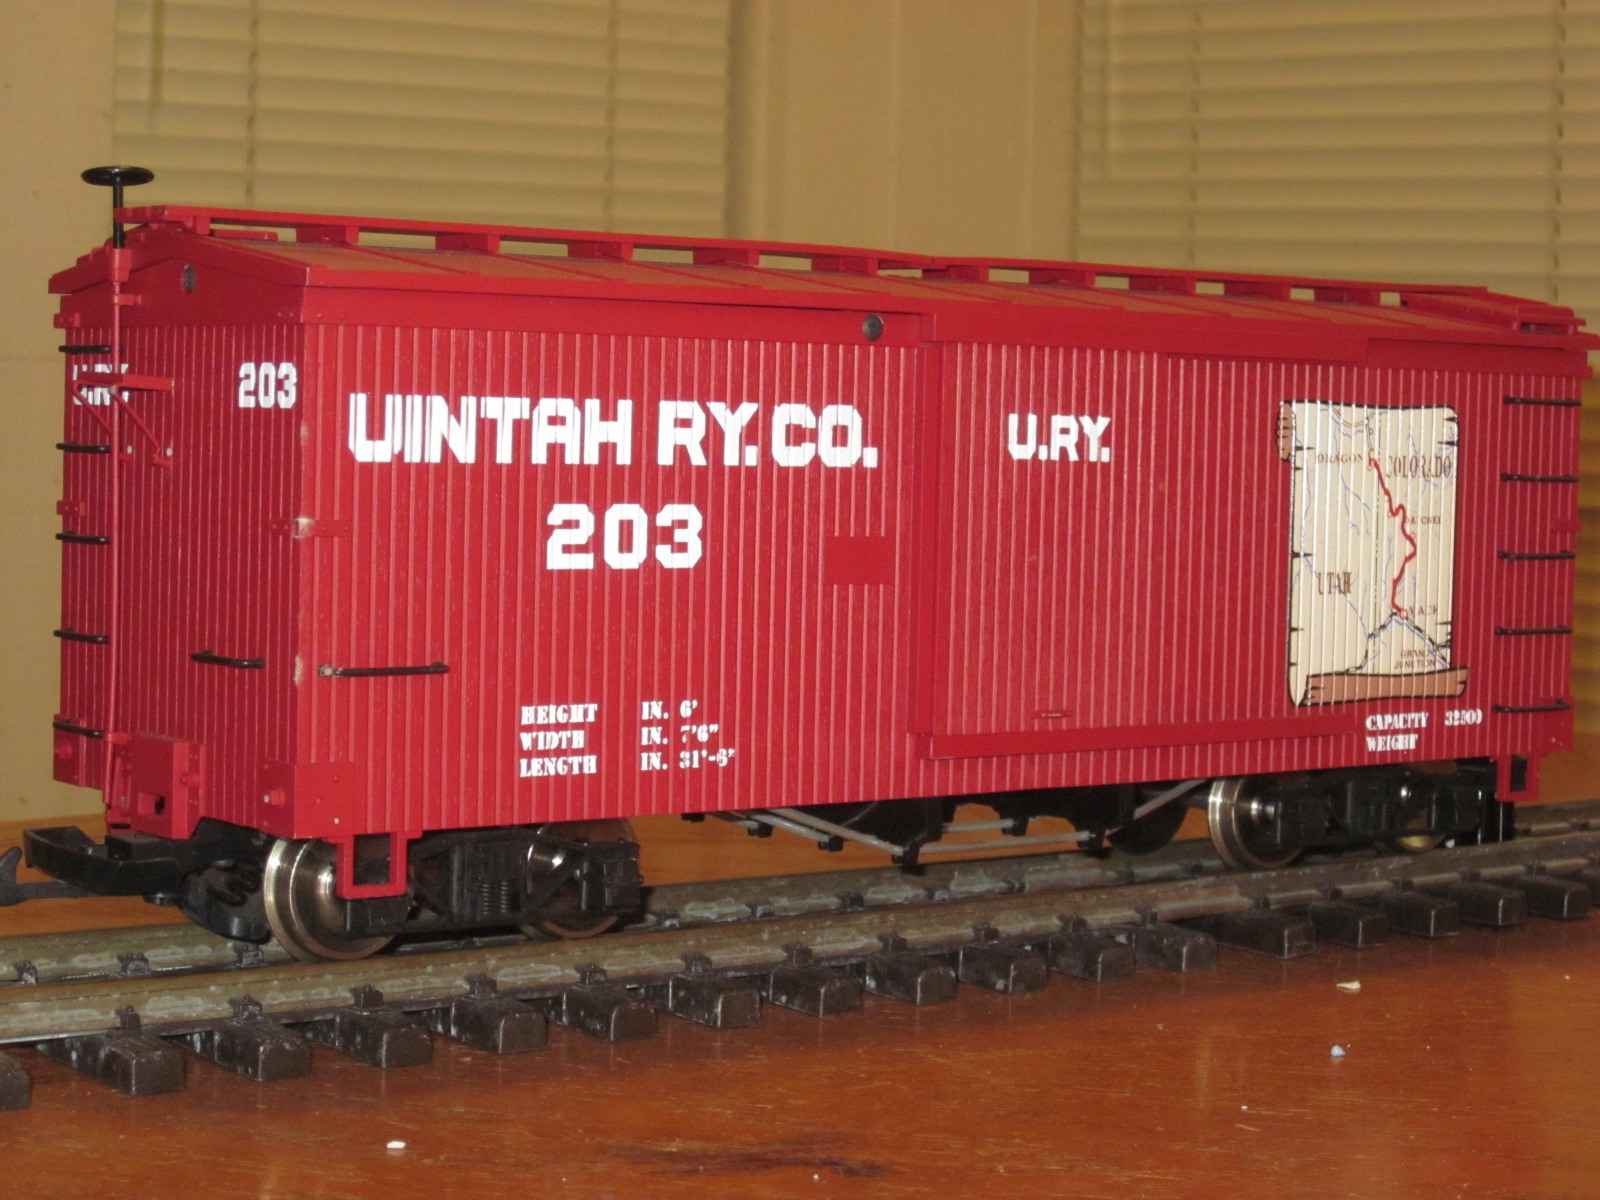 R19027 - Uintah (Map) - URY 203